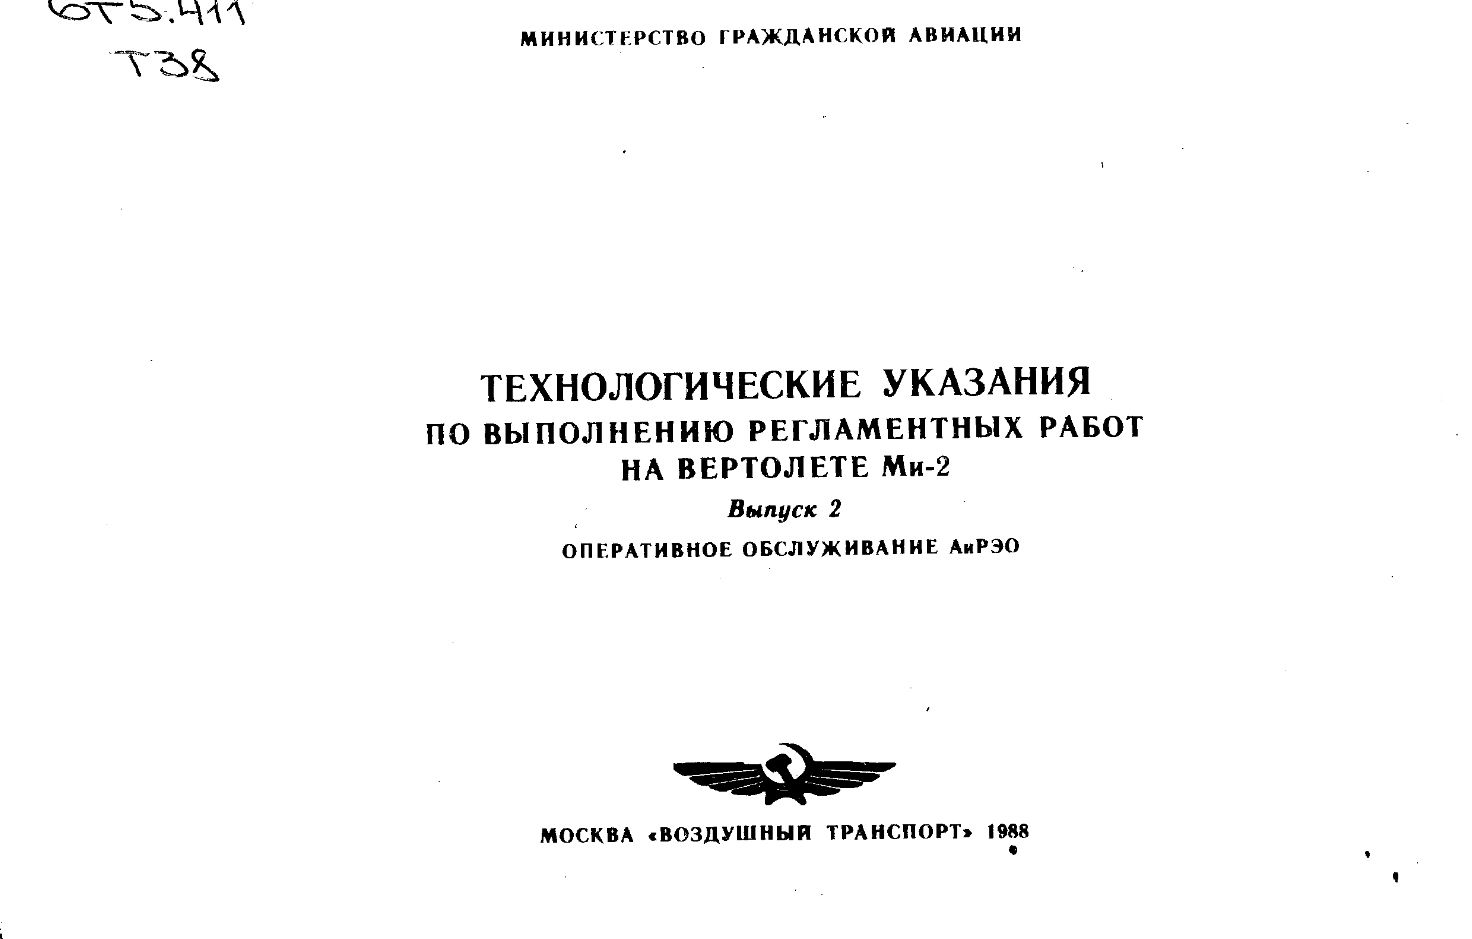 Ми-2. Технологические указания по вып реглам работ на вертолете МИ-2. Выпуск 2. Оперативное обслуж АиРЭО. 1988